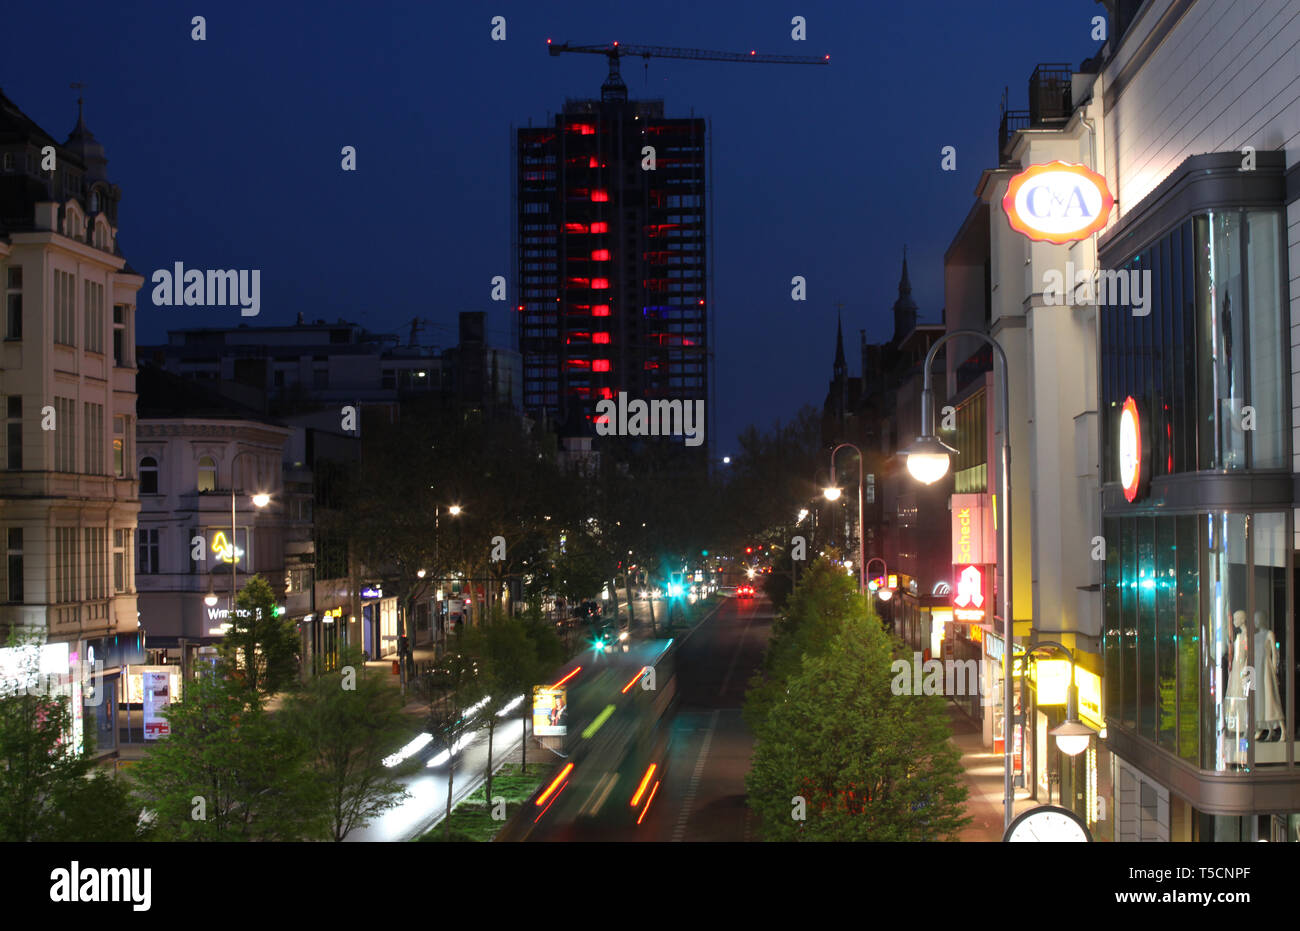 Berlin, Allemagne. 22 avr, 2019. Le noyau de étages du Steglitz rond-point sont éclairés avec la lumière rouge alors que le flux de trafic de nuit sur la Schlossstraße. 330 appartements sont en construction dans les 120 mètres de haute autorité tour construite dans les années 1970 dans le sud-ouest de la ville. "ÜBerlin" - Über Berlin - est ce que les clients appellent le projet. Credit : Hanns-Peter Lochmann/dpa-Zentralbild/ZB/dpa/Alamy Live News Banque D'Images